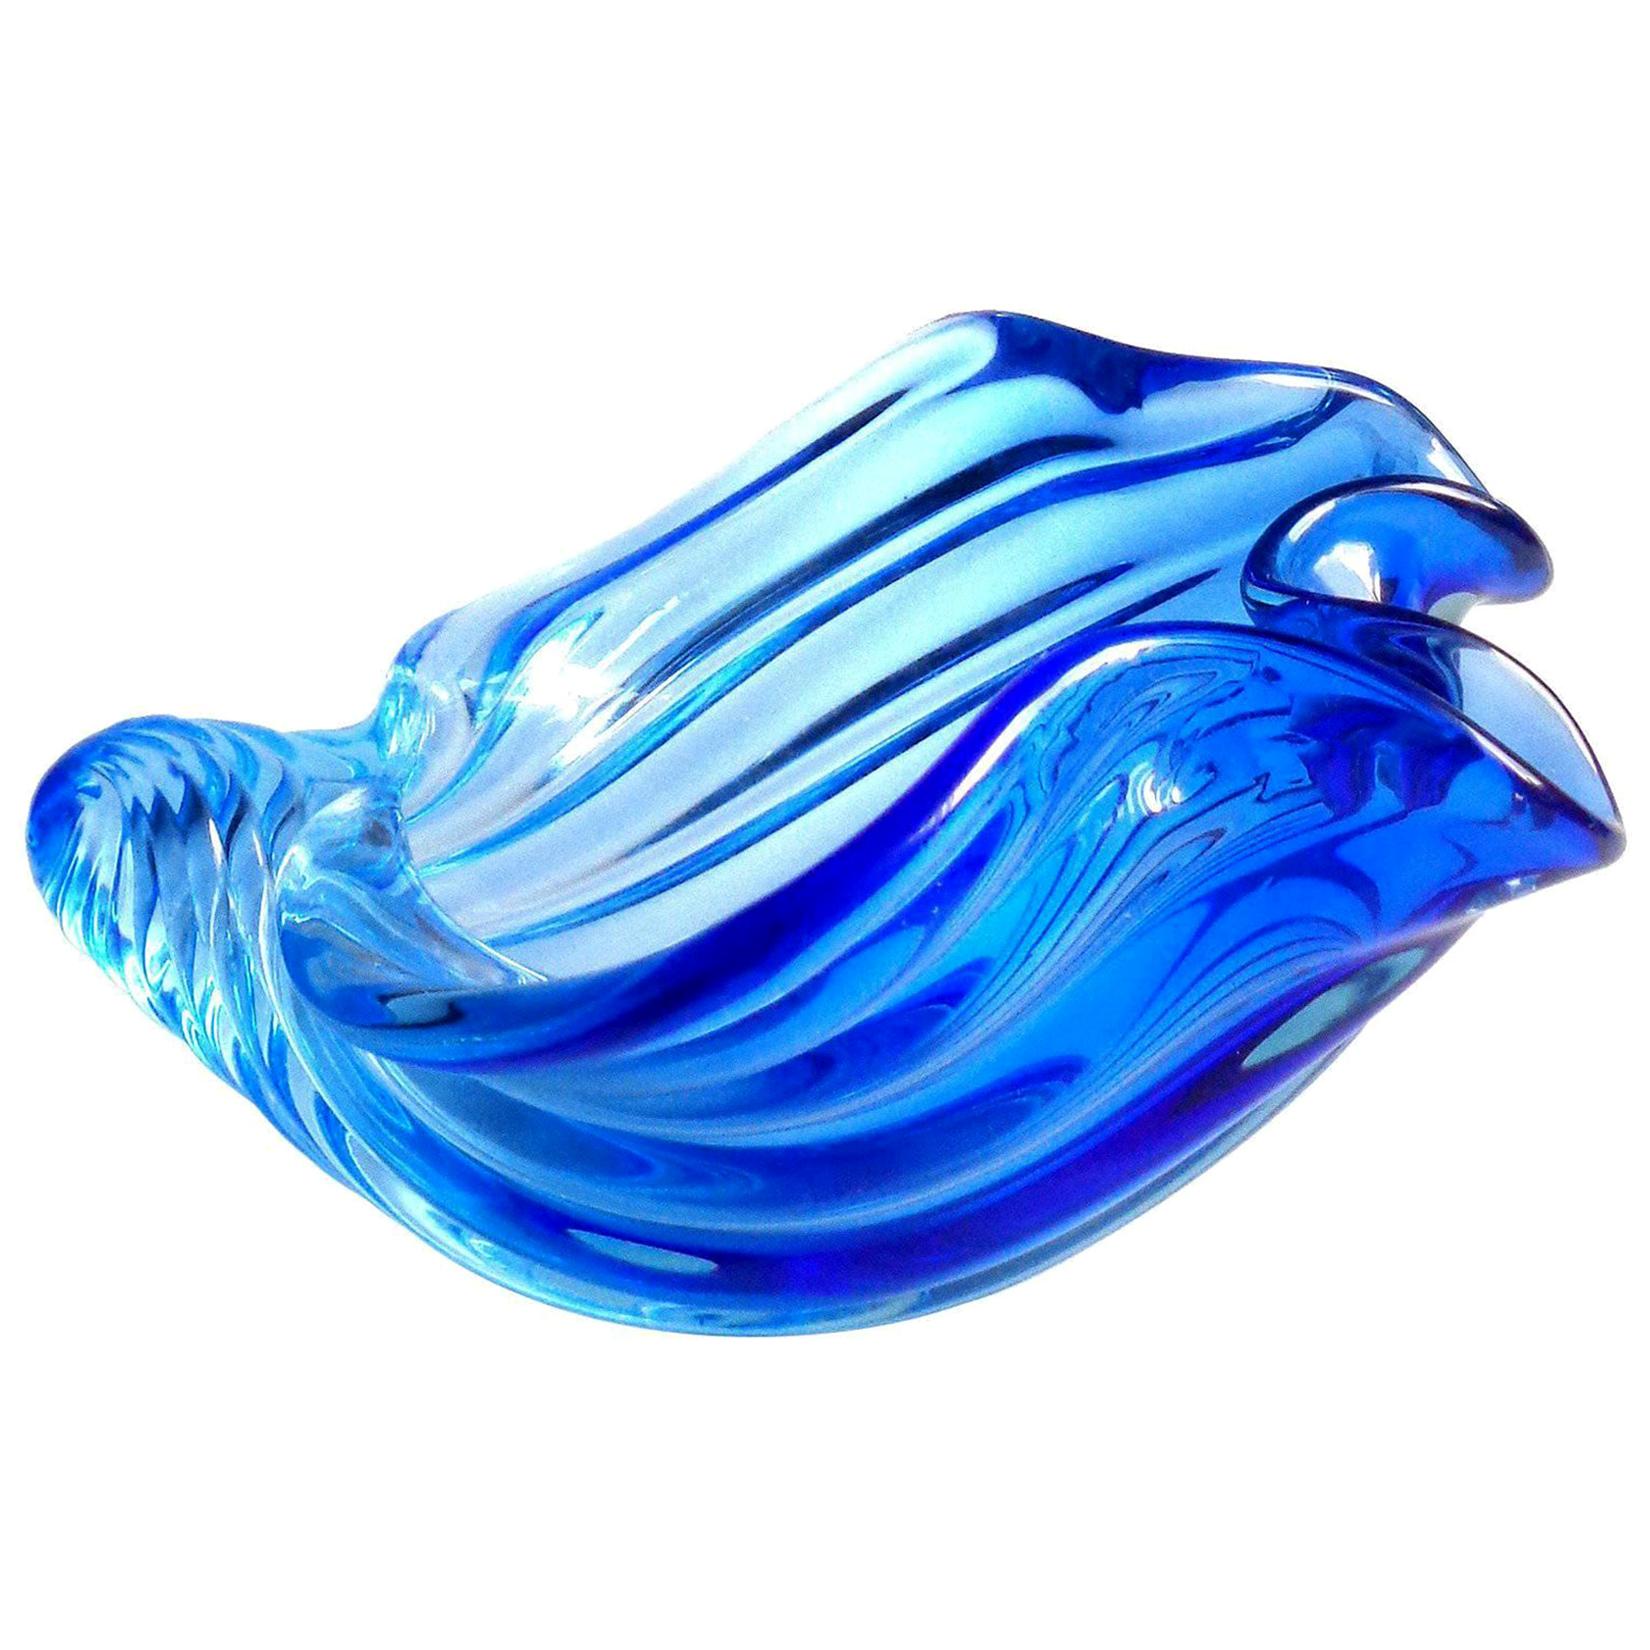 Barbini Murano Sommerso Cobalt Blue Italian Art Glass Seashell Sculptures Bowl